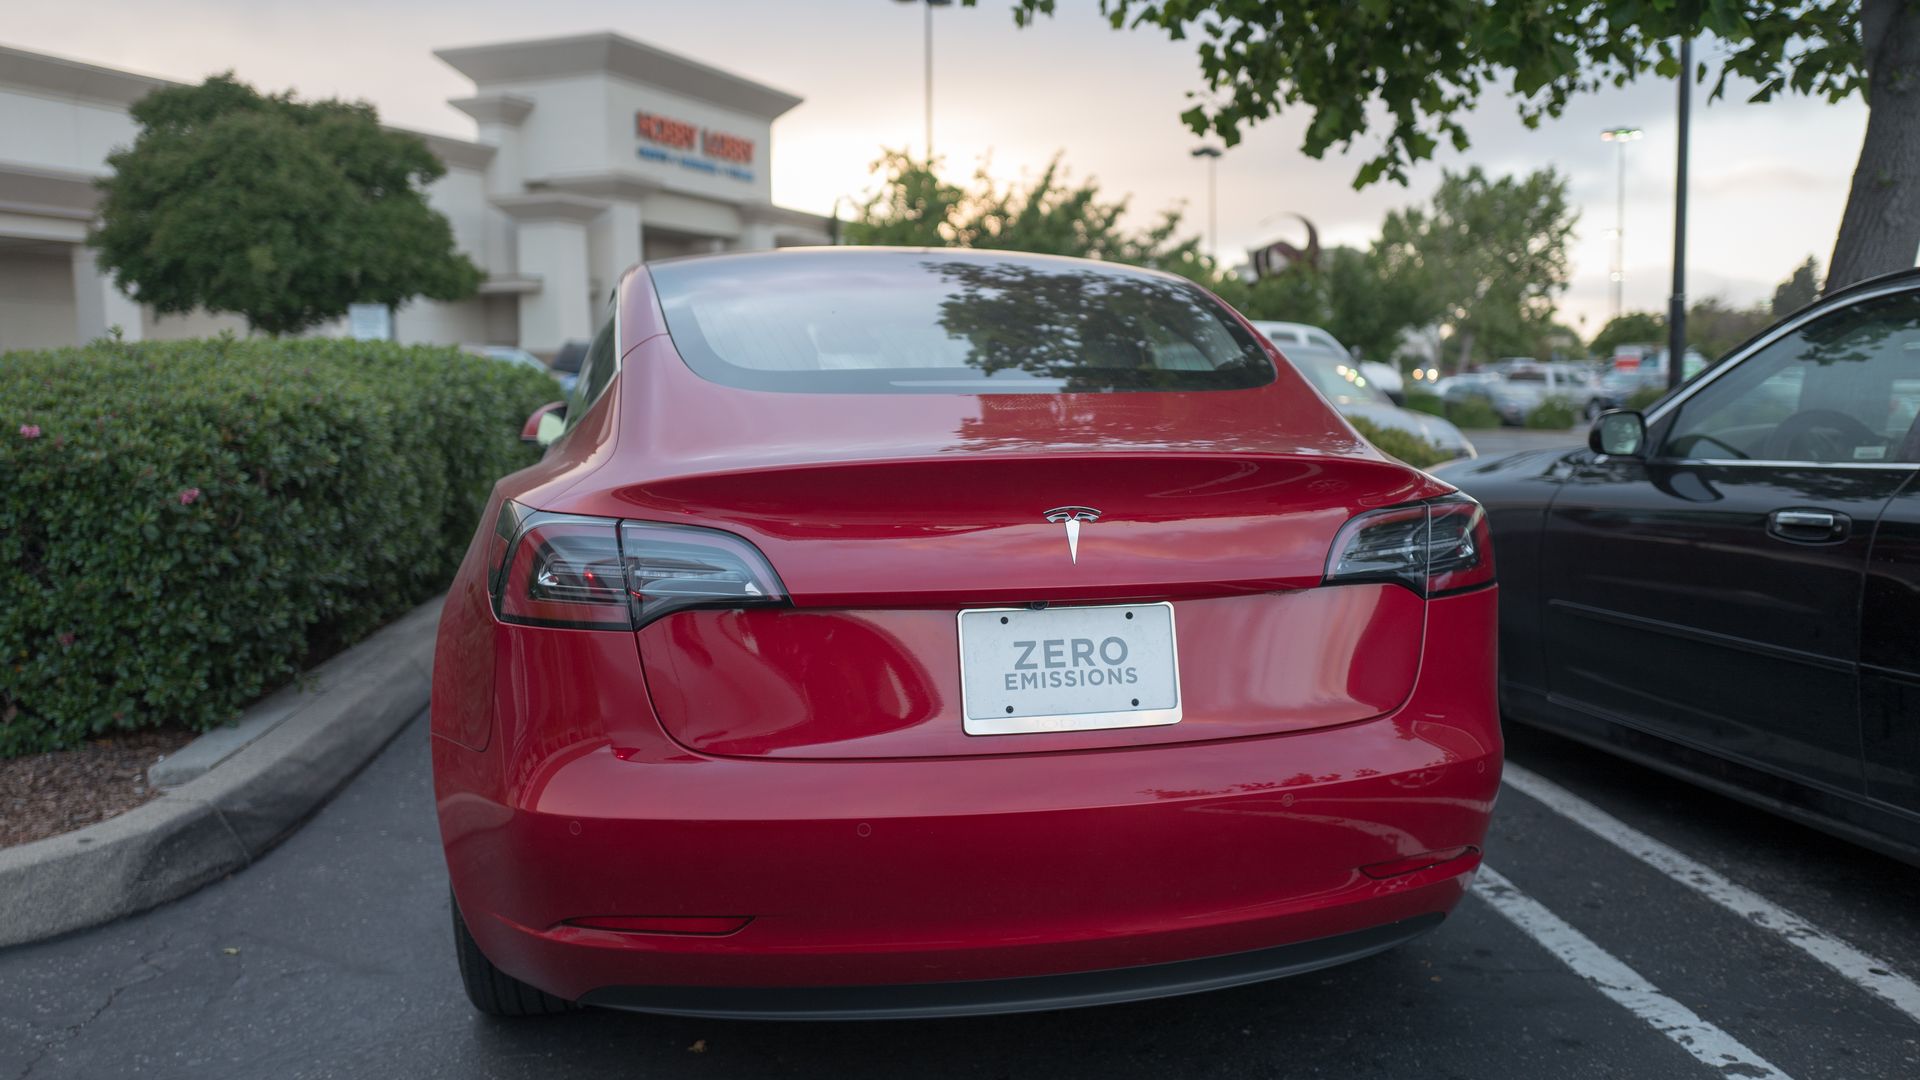 The backend of a Tesla model 3 sedan.